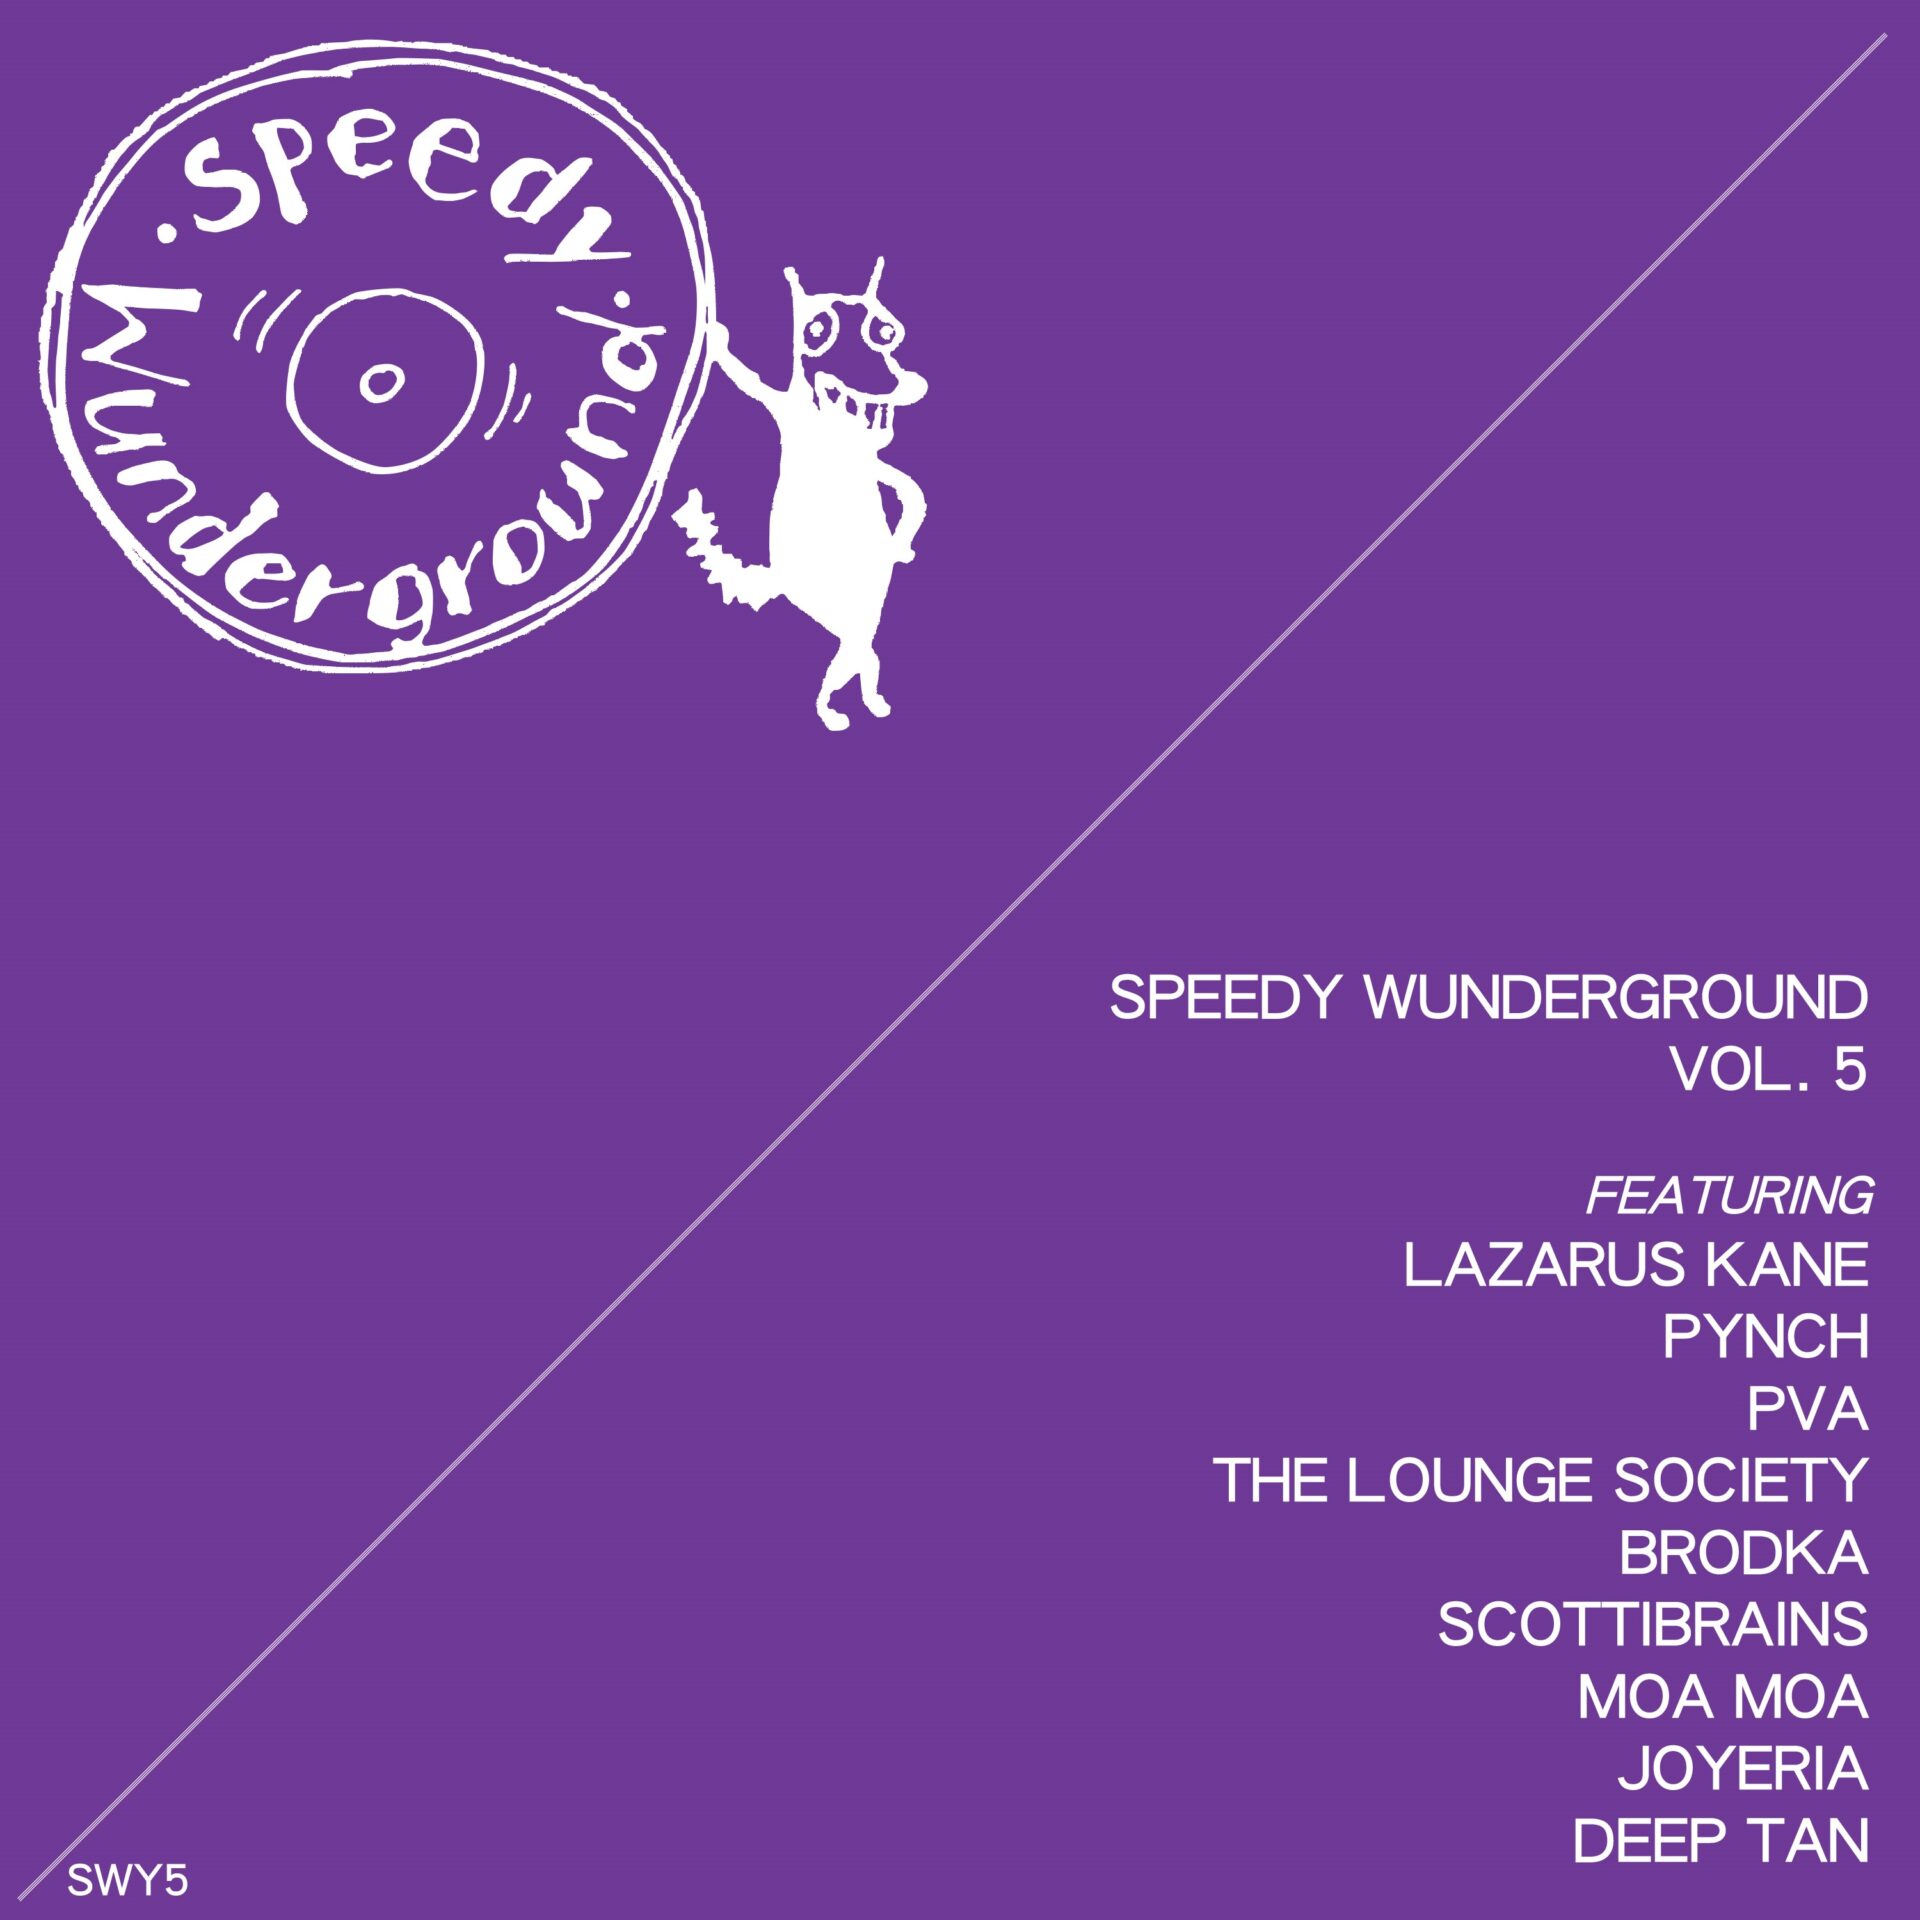 Speedy Wunderground - Vol. 5 Compilation